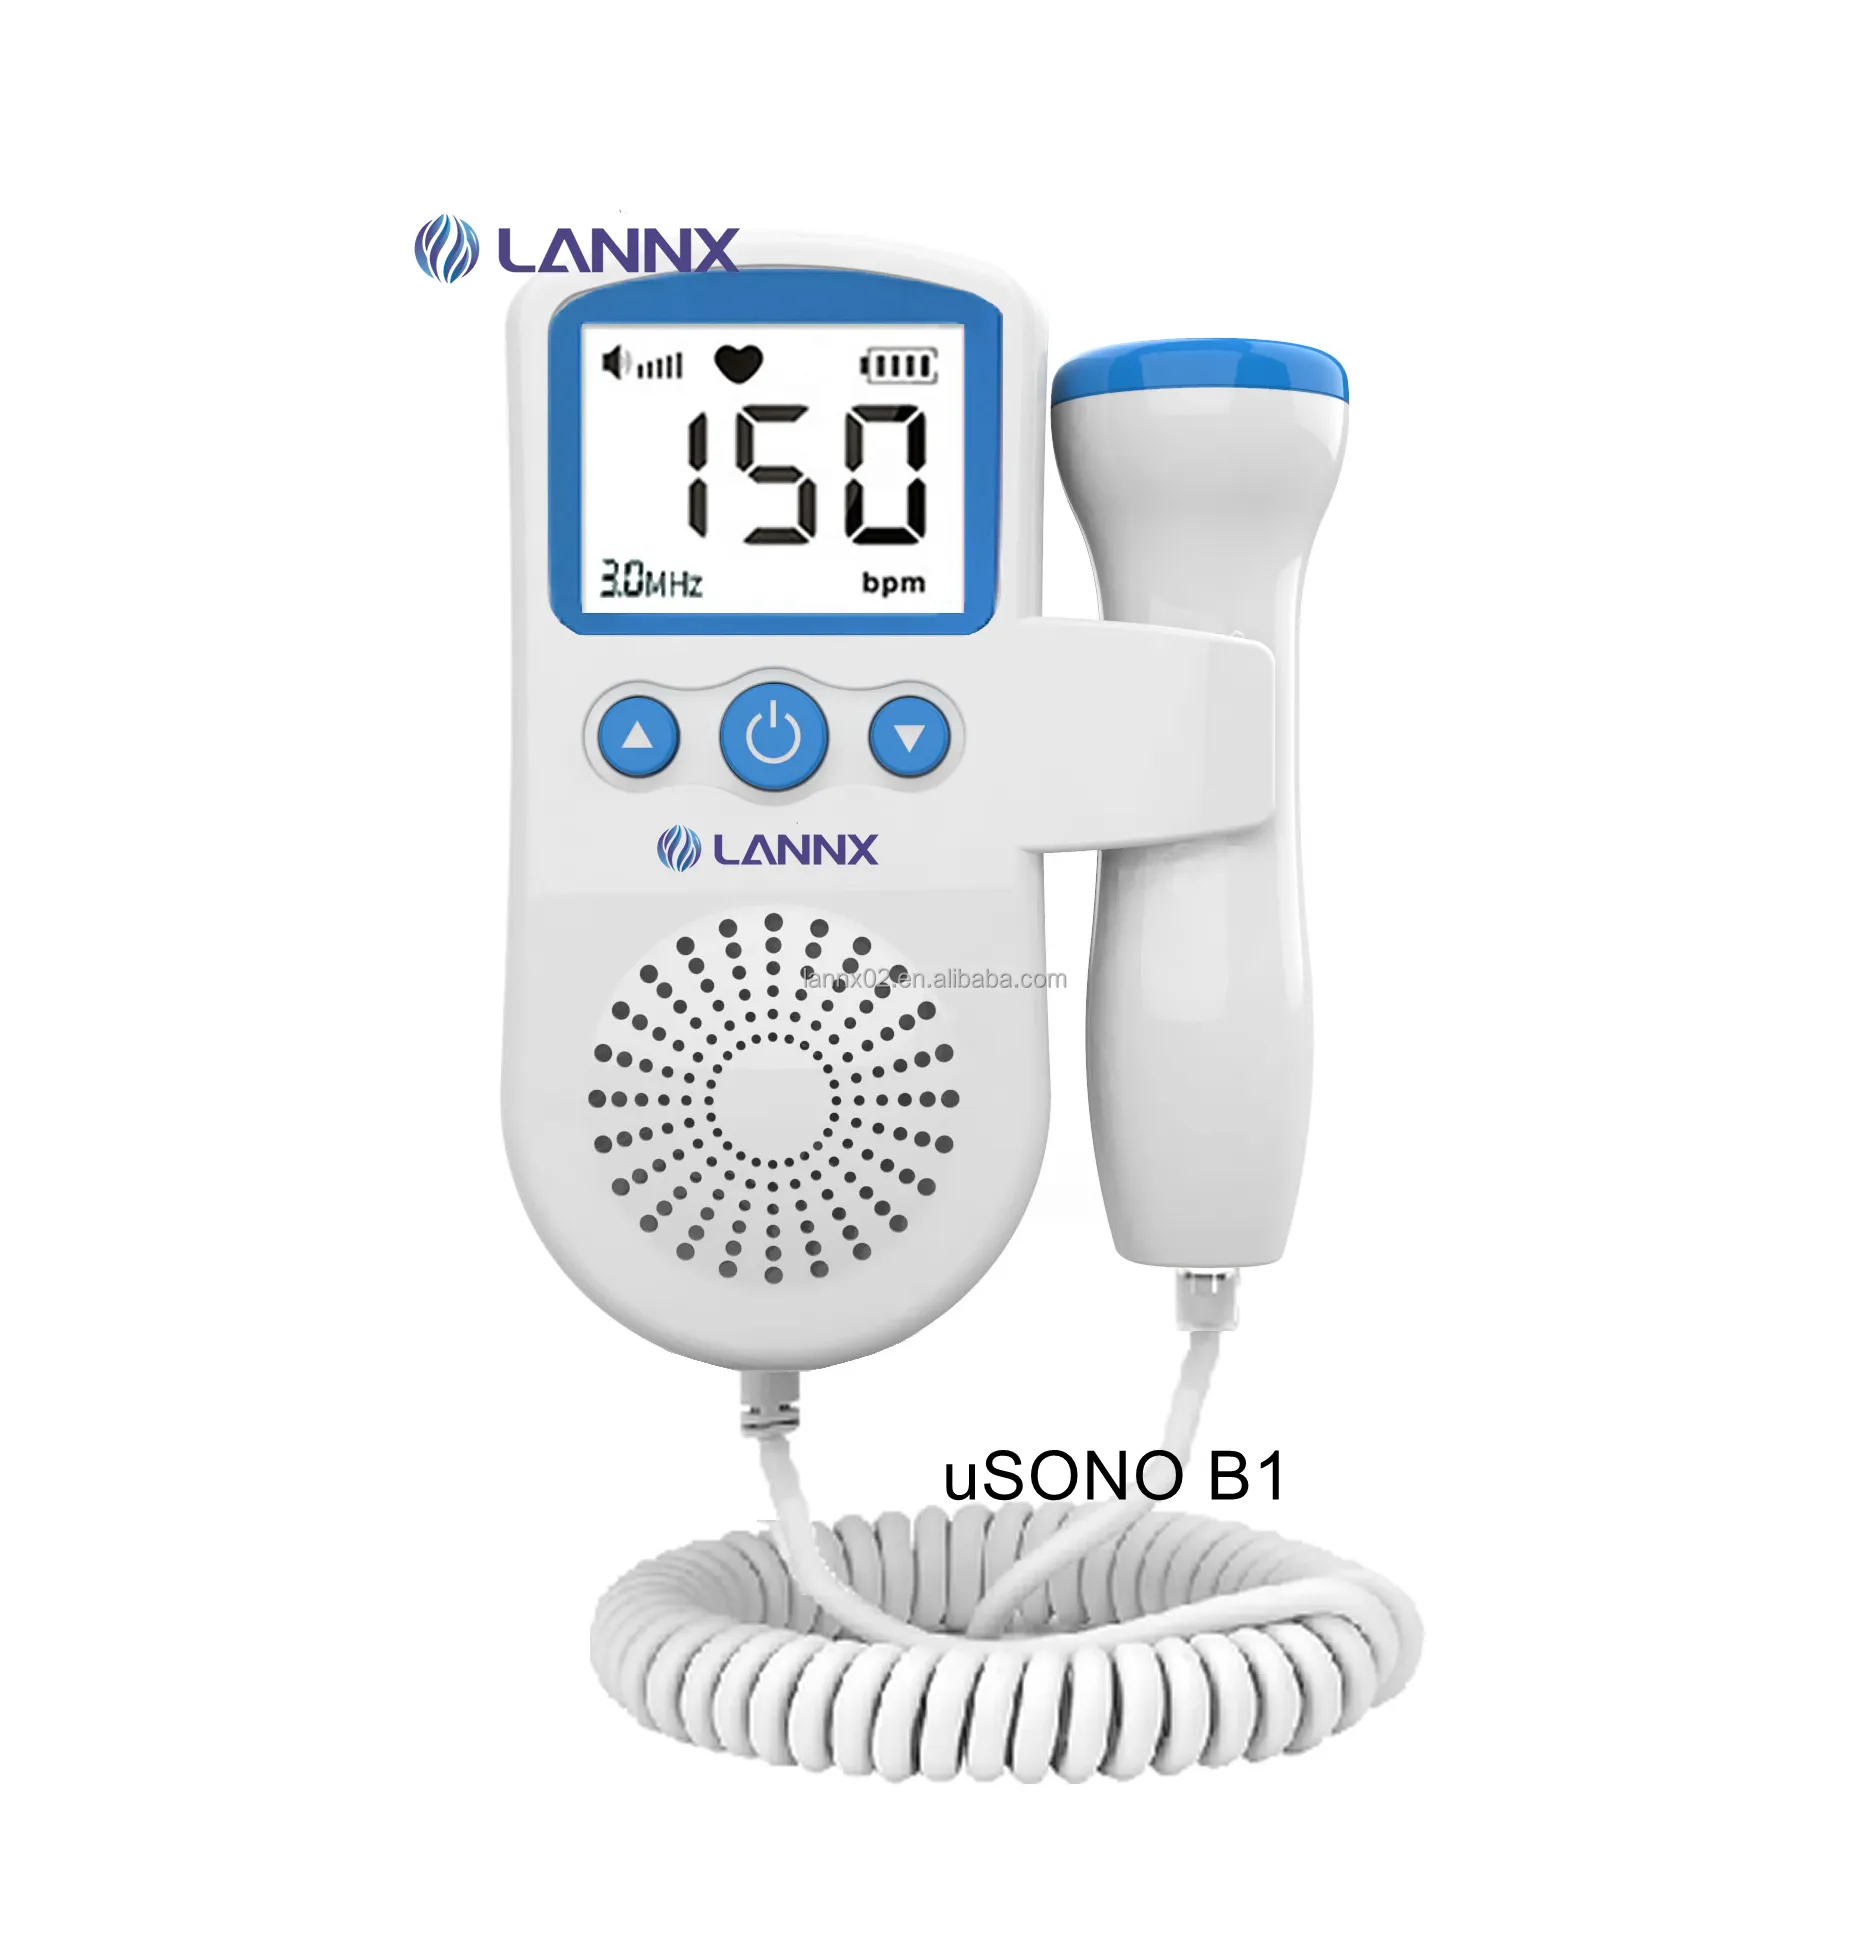 Lanx uSono B1 Preço mais barato Monitor Doppler para bebês com tela LCD, sonda digital de mão de 3,0 MHz, monitor de coração do bebê, Doppler fetal